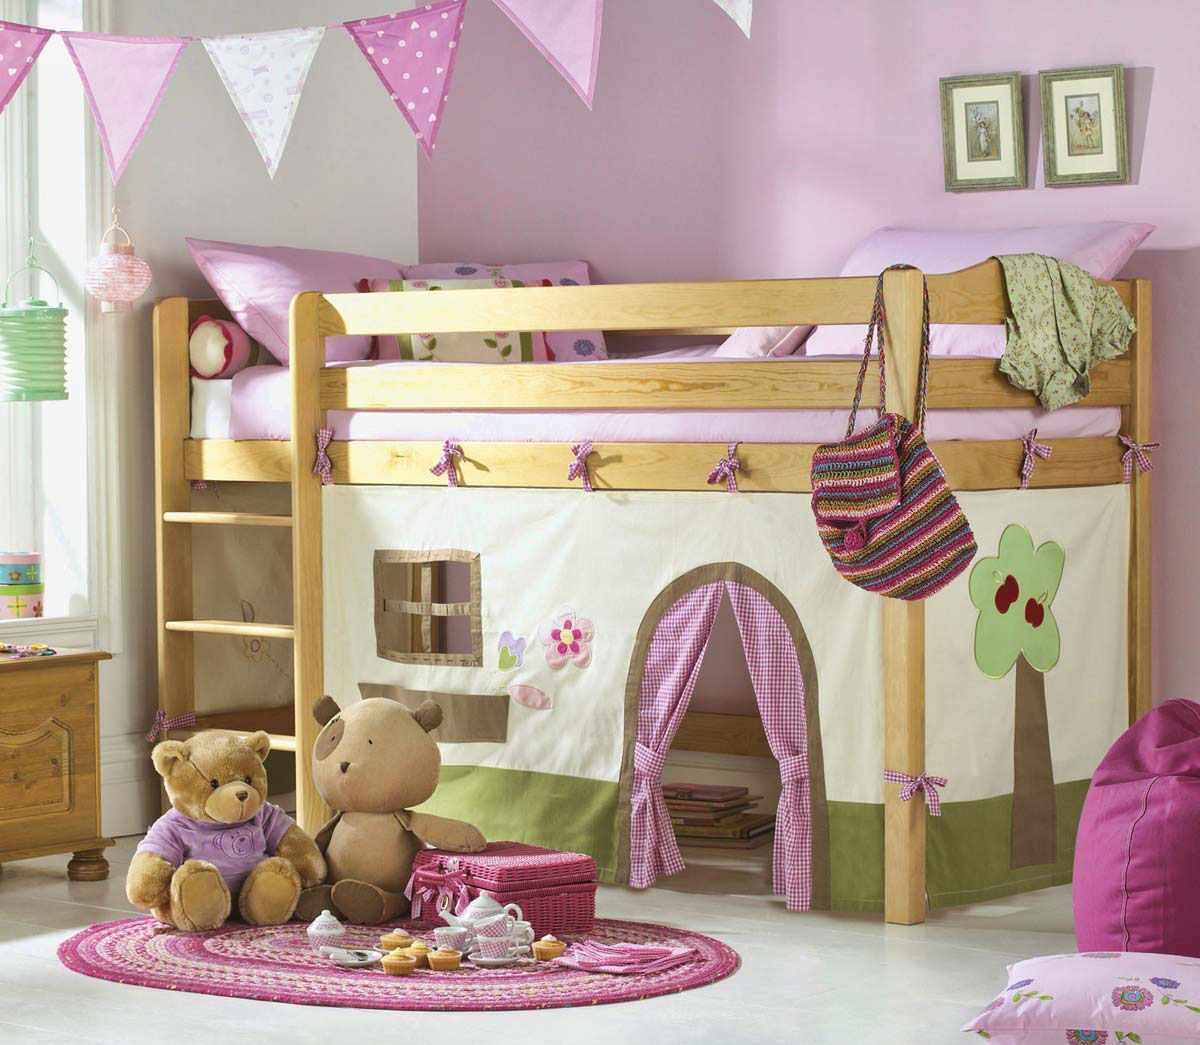 مثال على تصميم غير عادي لغرفة نوم لفتاة